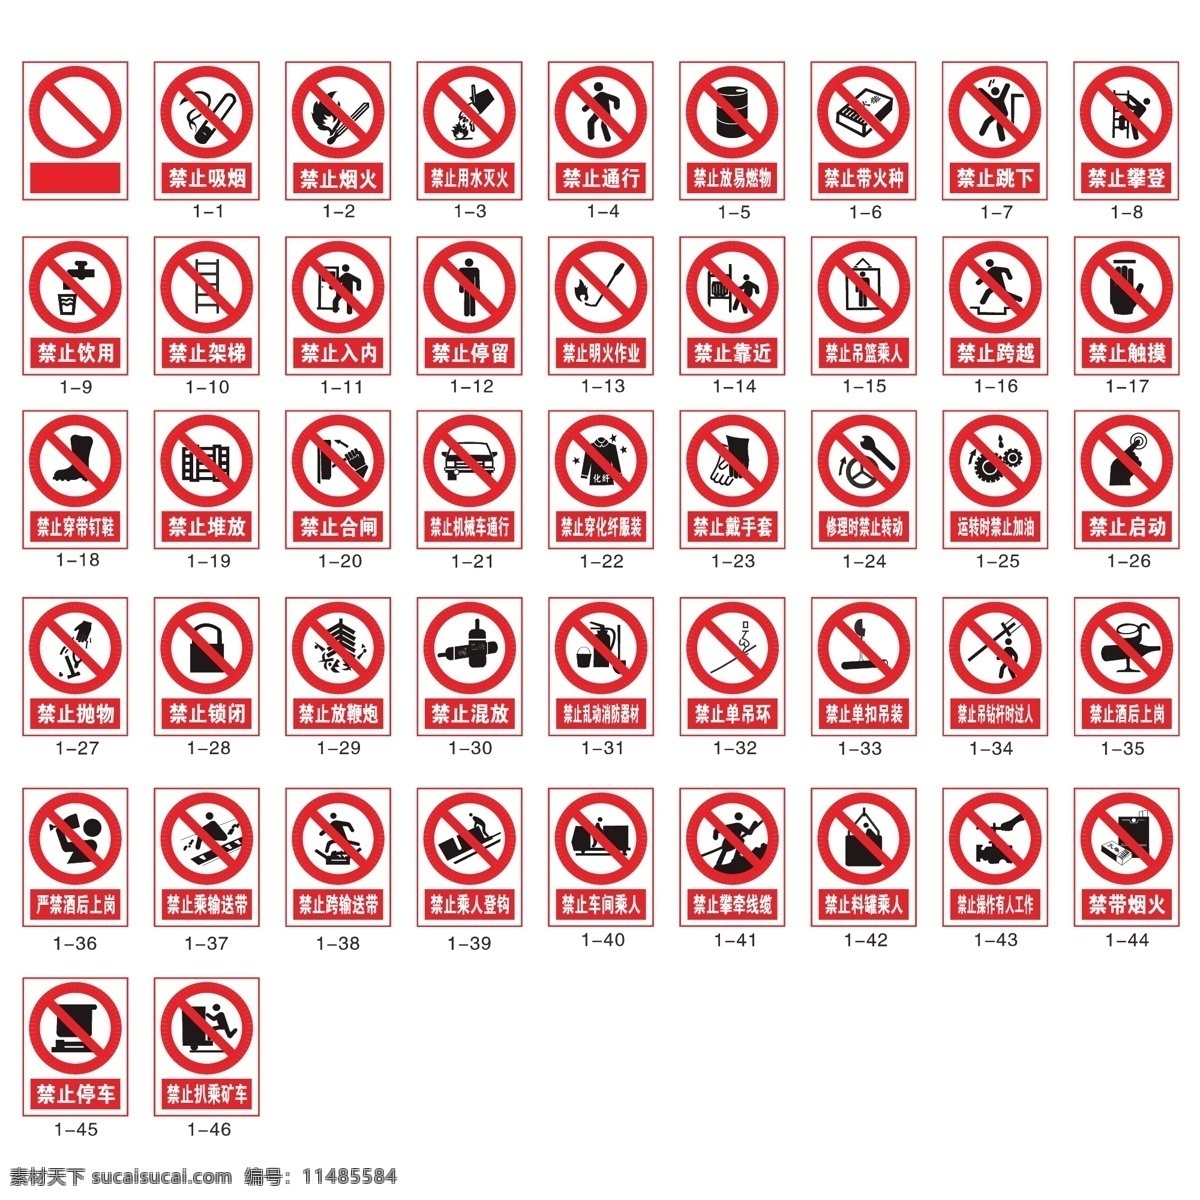 禁止标志图片 禁止标志 标志集合 工地 安全 禁止吸烟 标志图标 公共标识标志